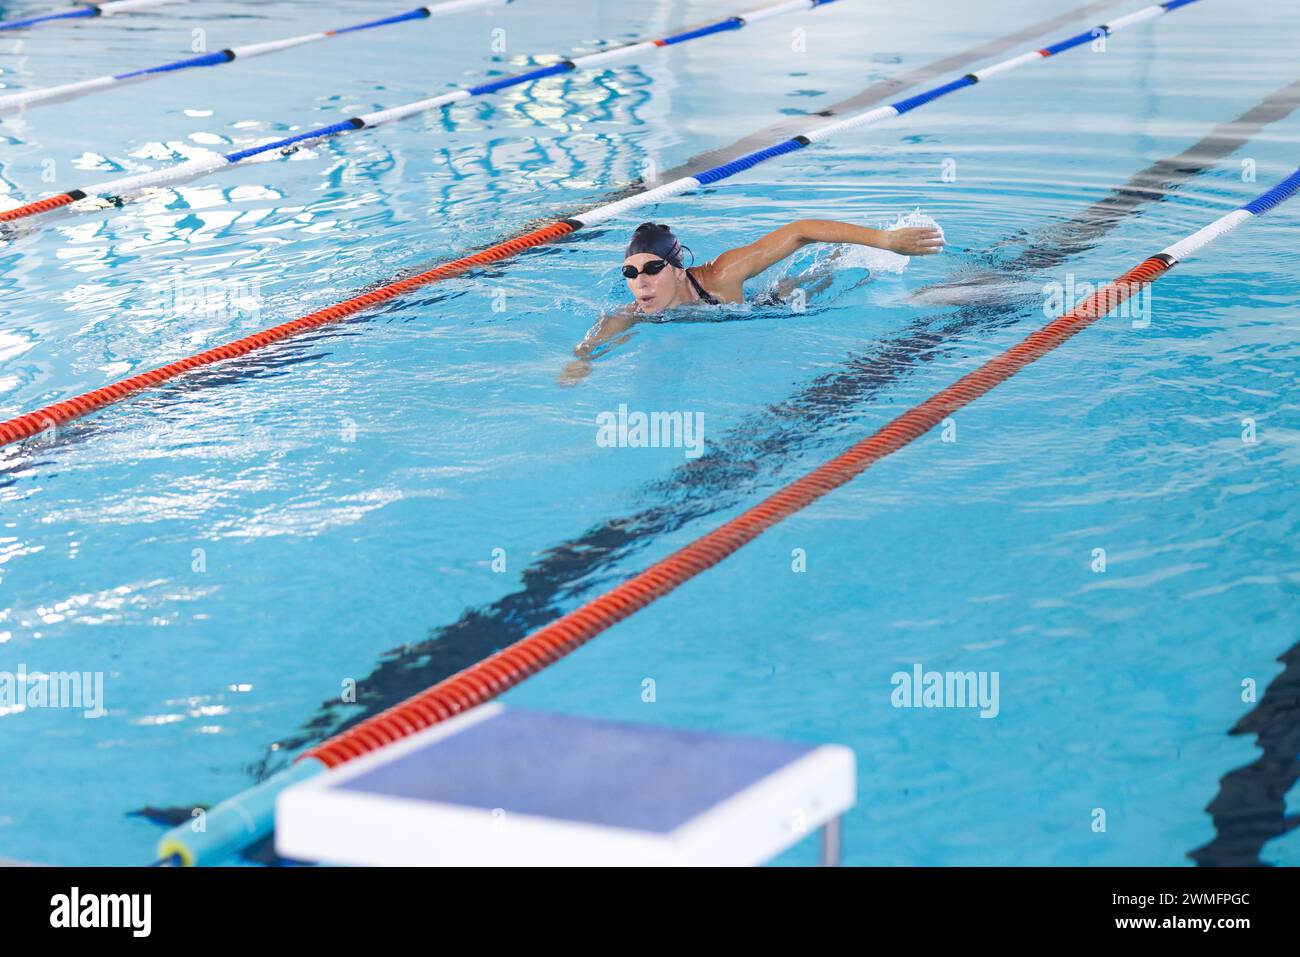 Eine weiße Sportlerin schwimmt in einem Pool und zeigt ihre sportliche Form Stockfoto